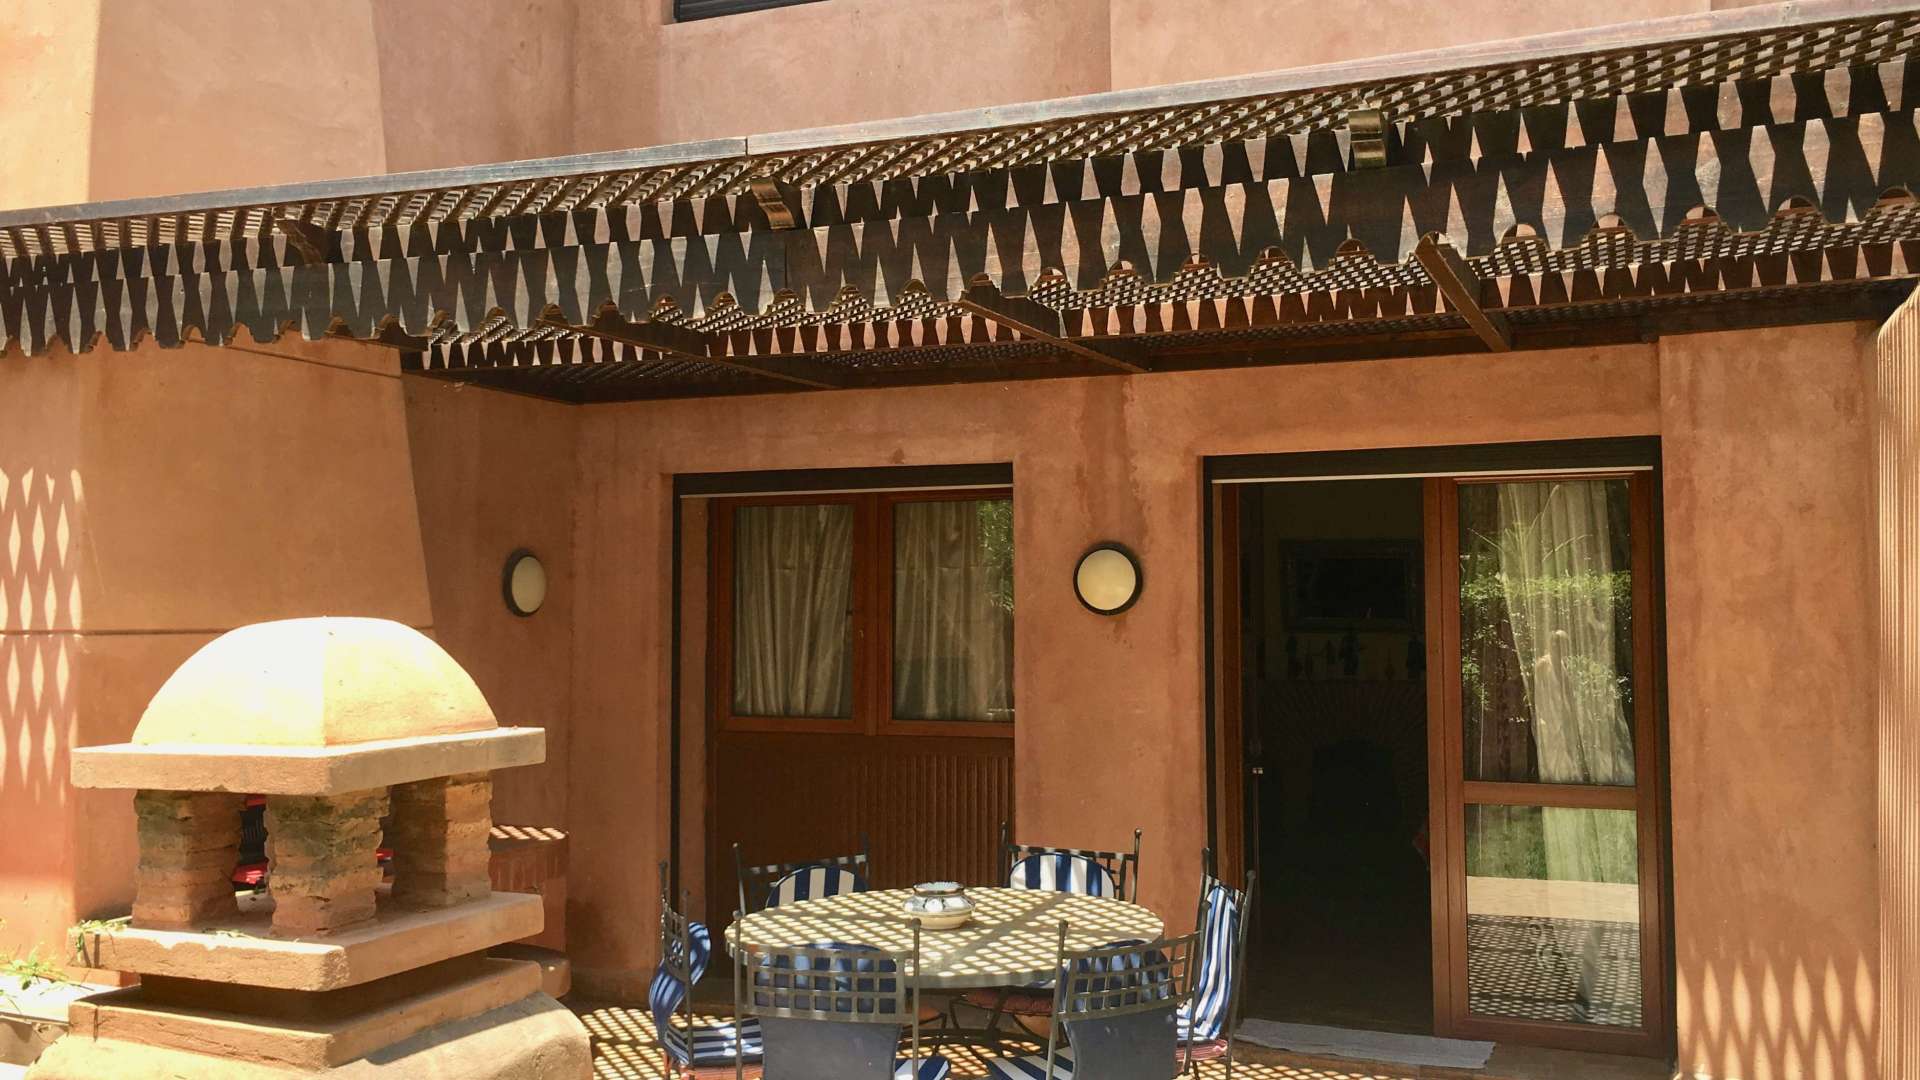 Vente,Appartement,Vente Appartement 2 chambres en rez-de-jardin dans une belle residence avec piscine et jardin Agdal Marrakech,Marrakech,Agdal